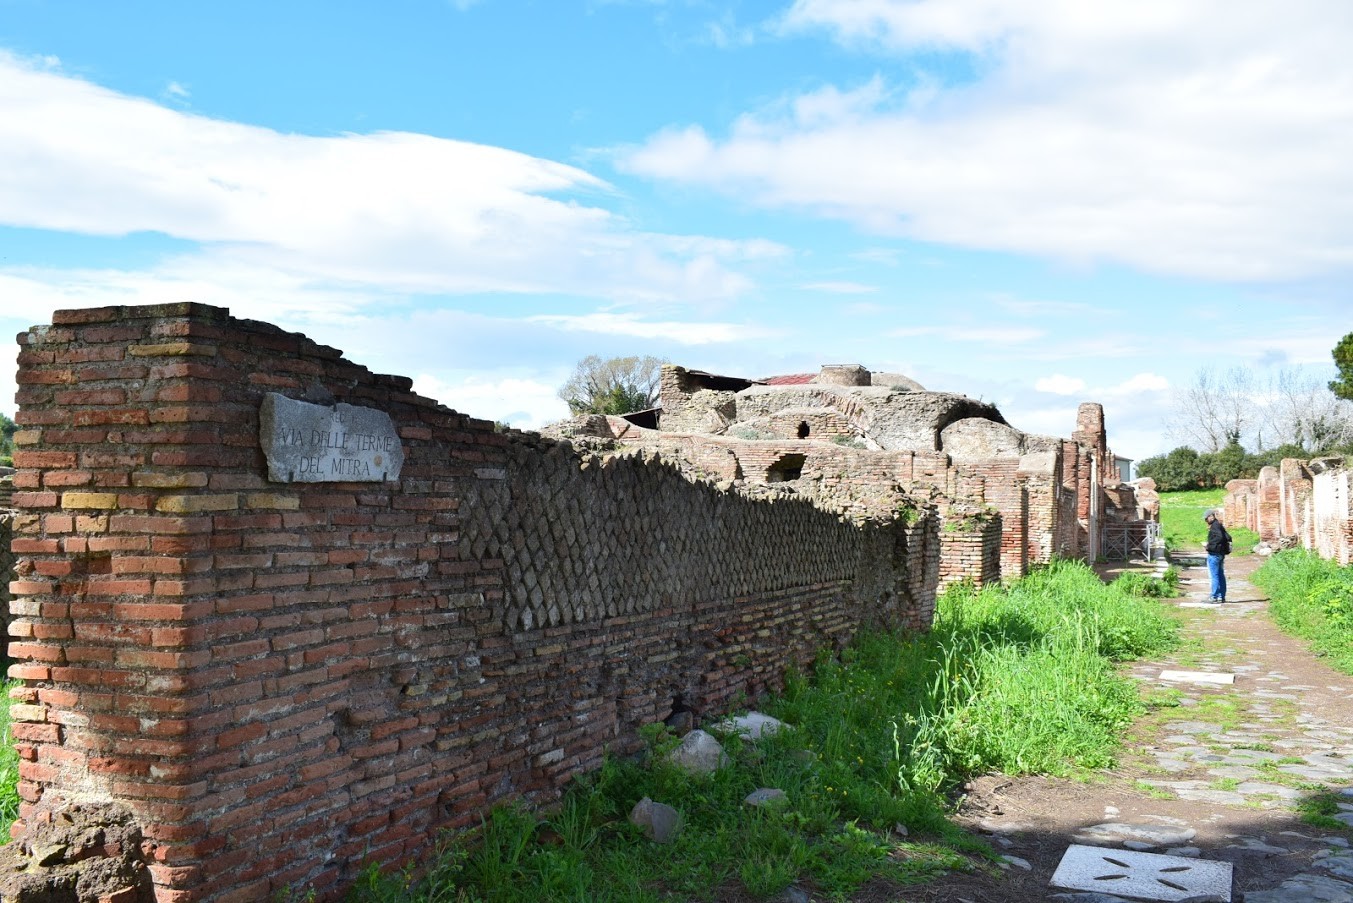 Rome’s ancient harbor city – Ostia Antica